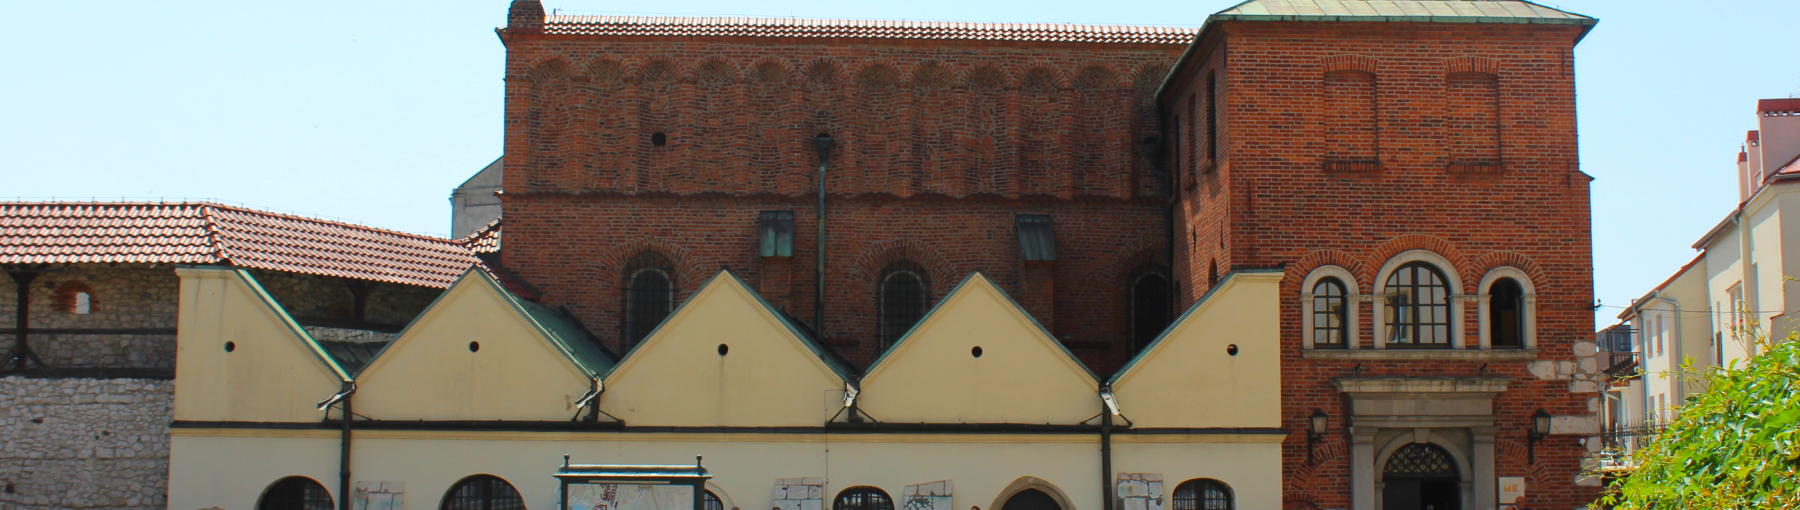 Kazimierz - de joodse wijk van Krakau